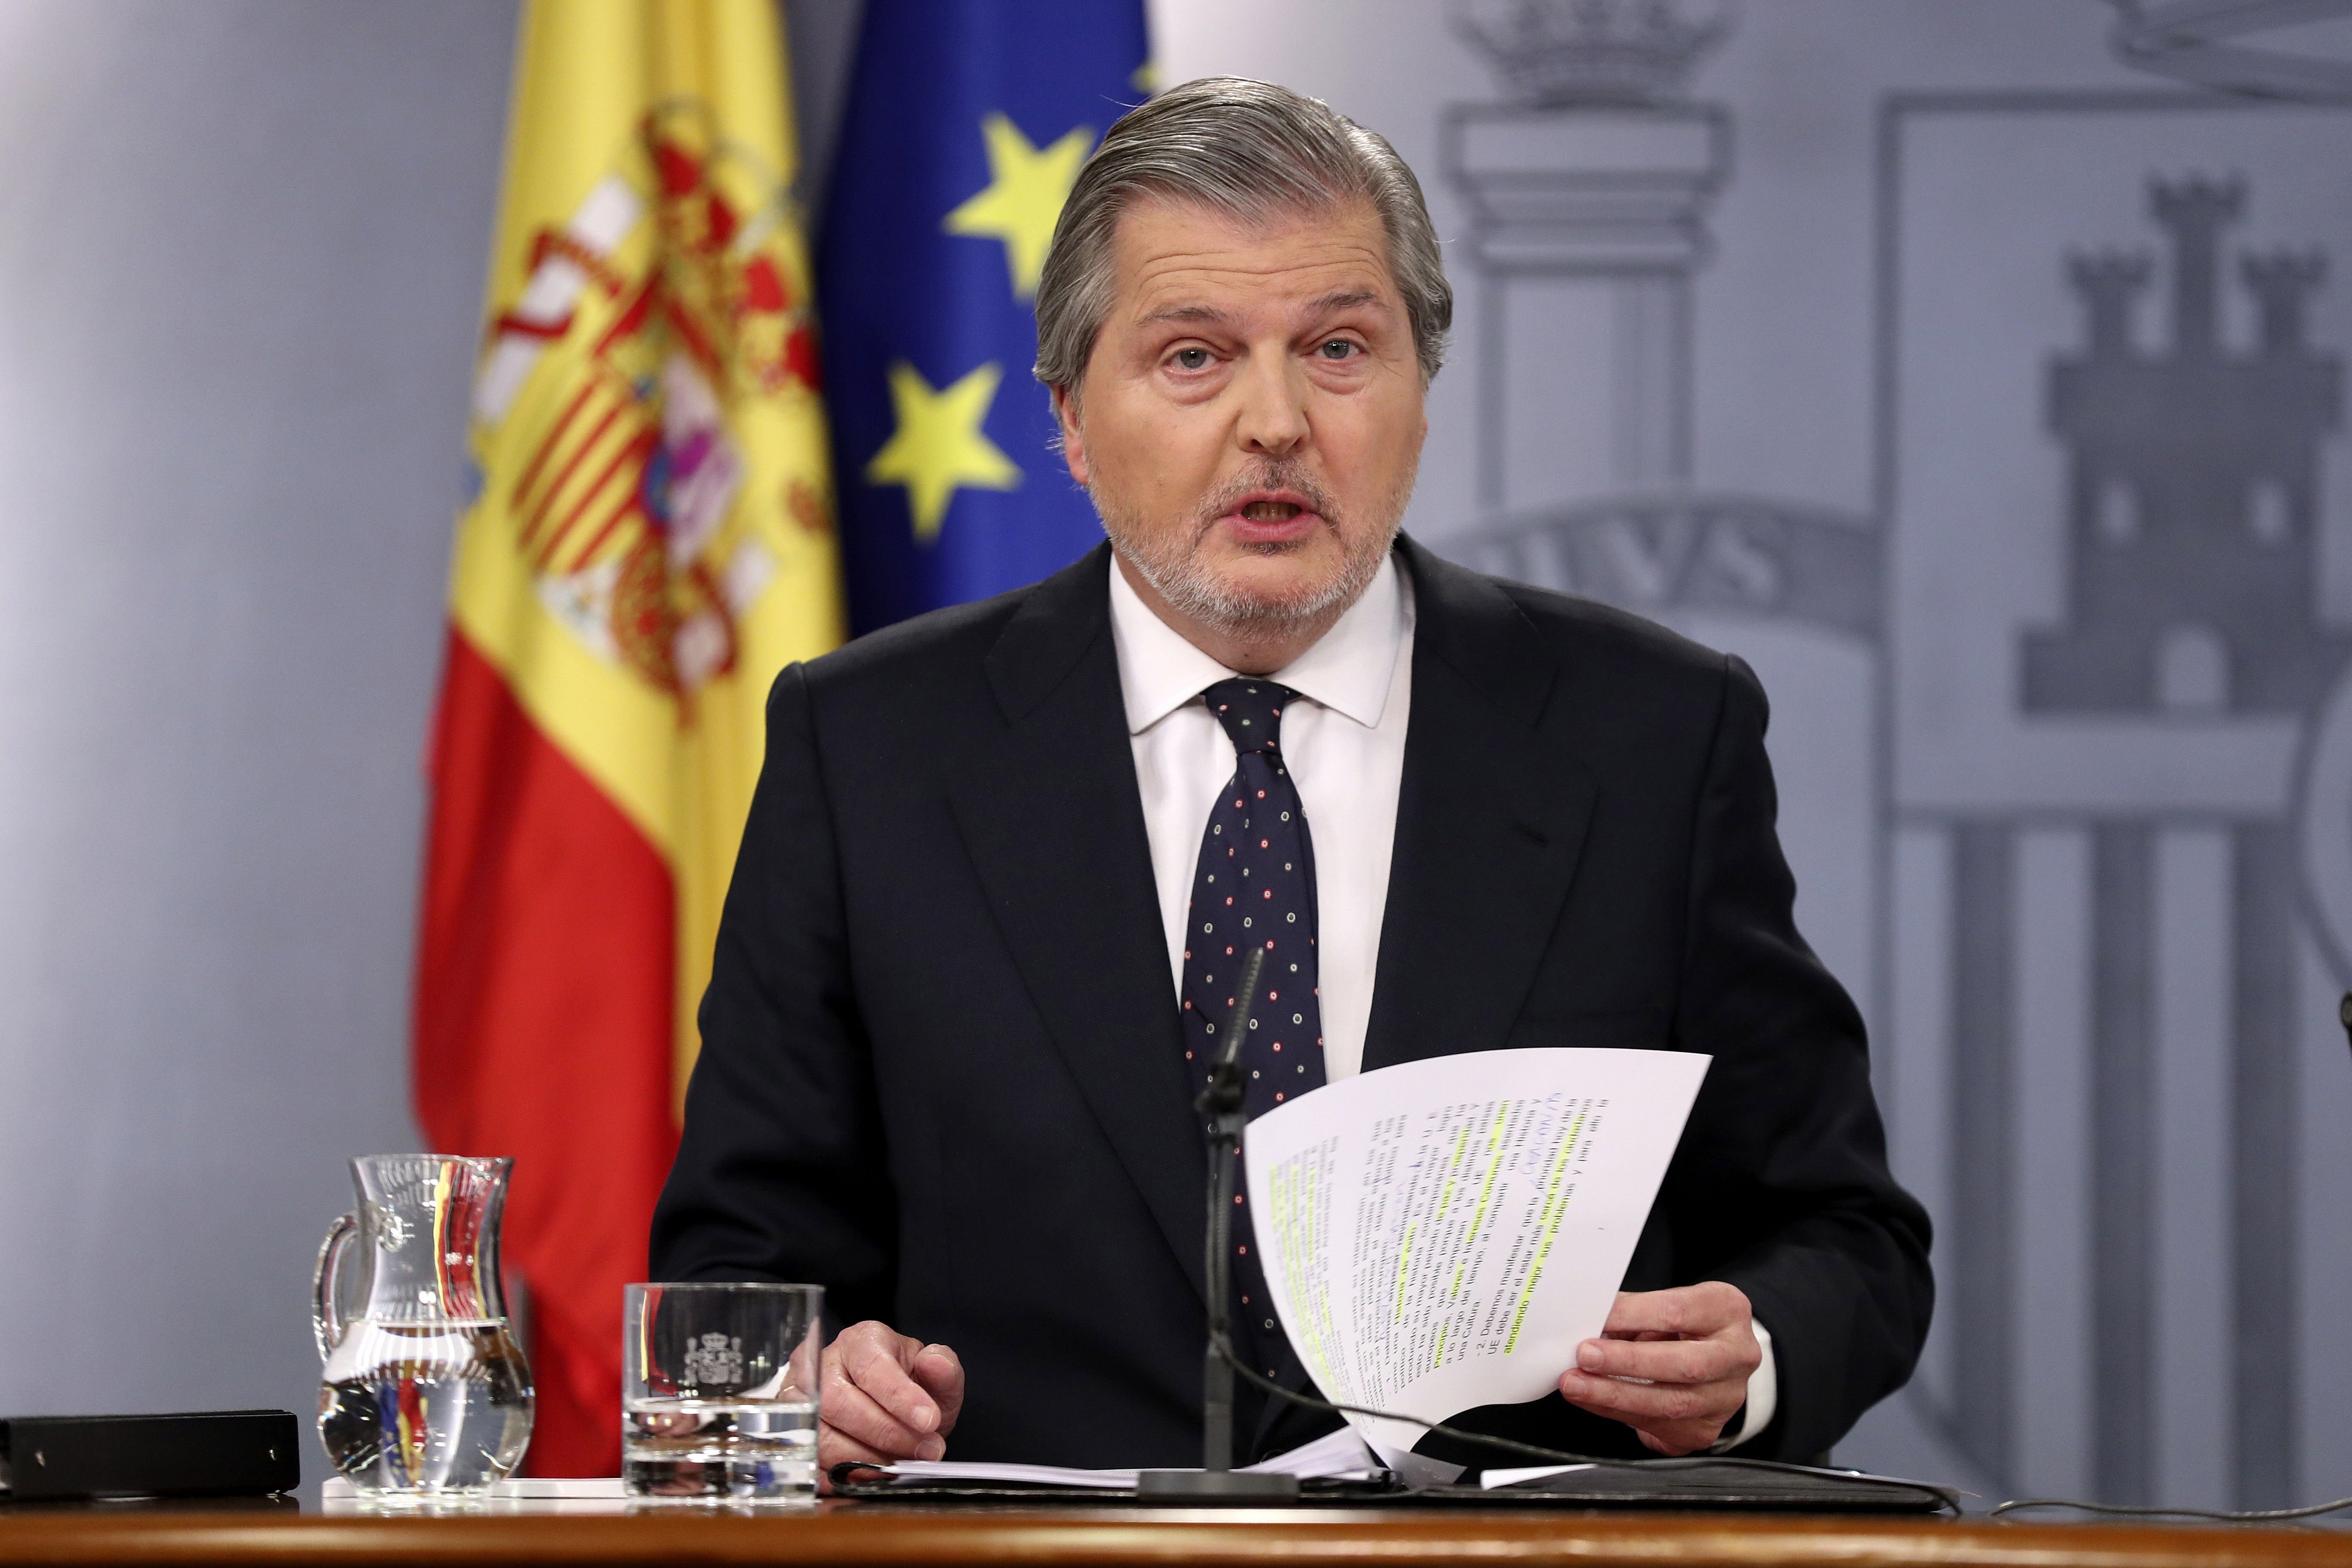 El govern espanyol "no consentirà" una modificació legislativa per investir Puigdemont